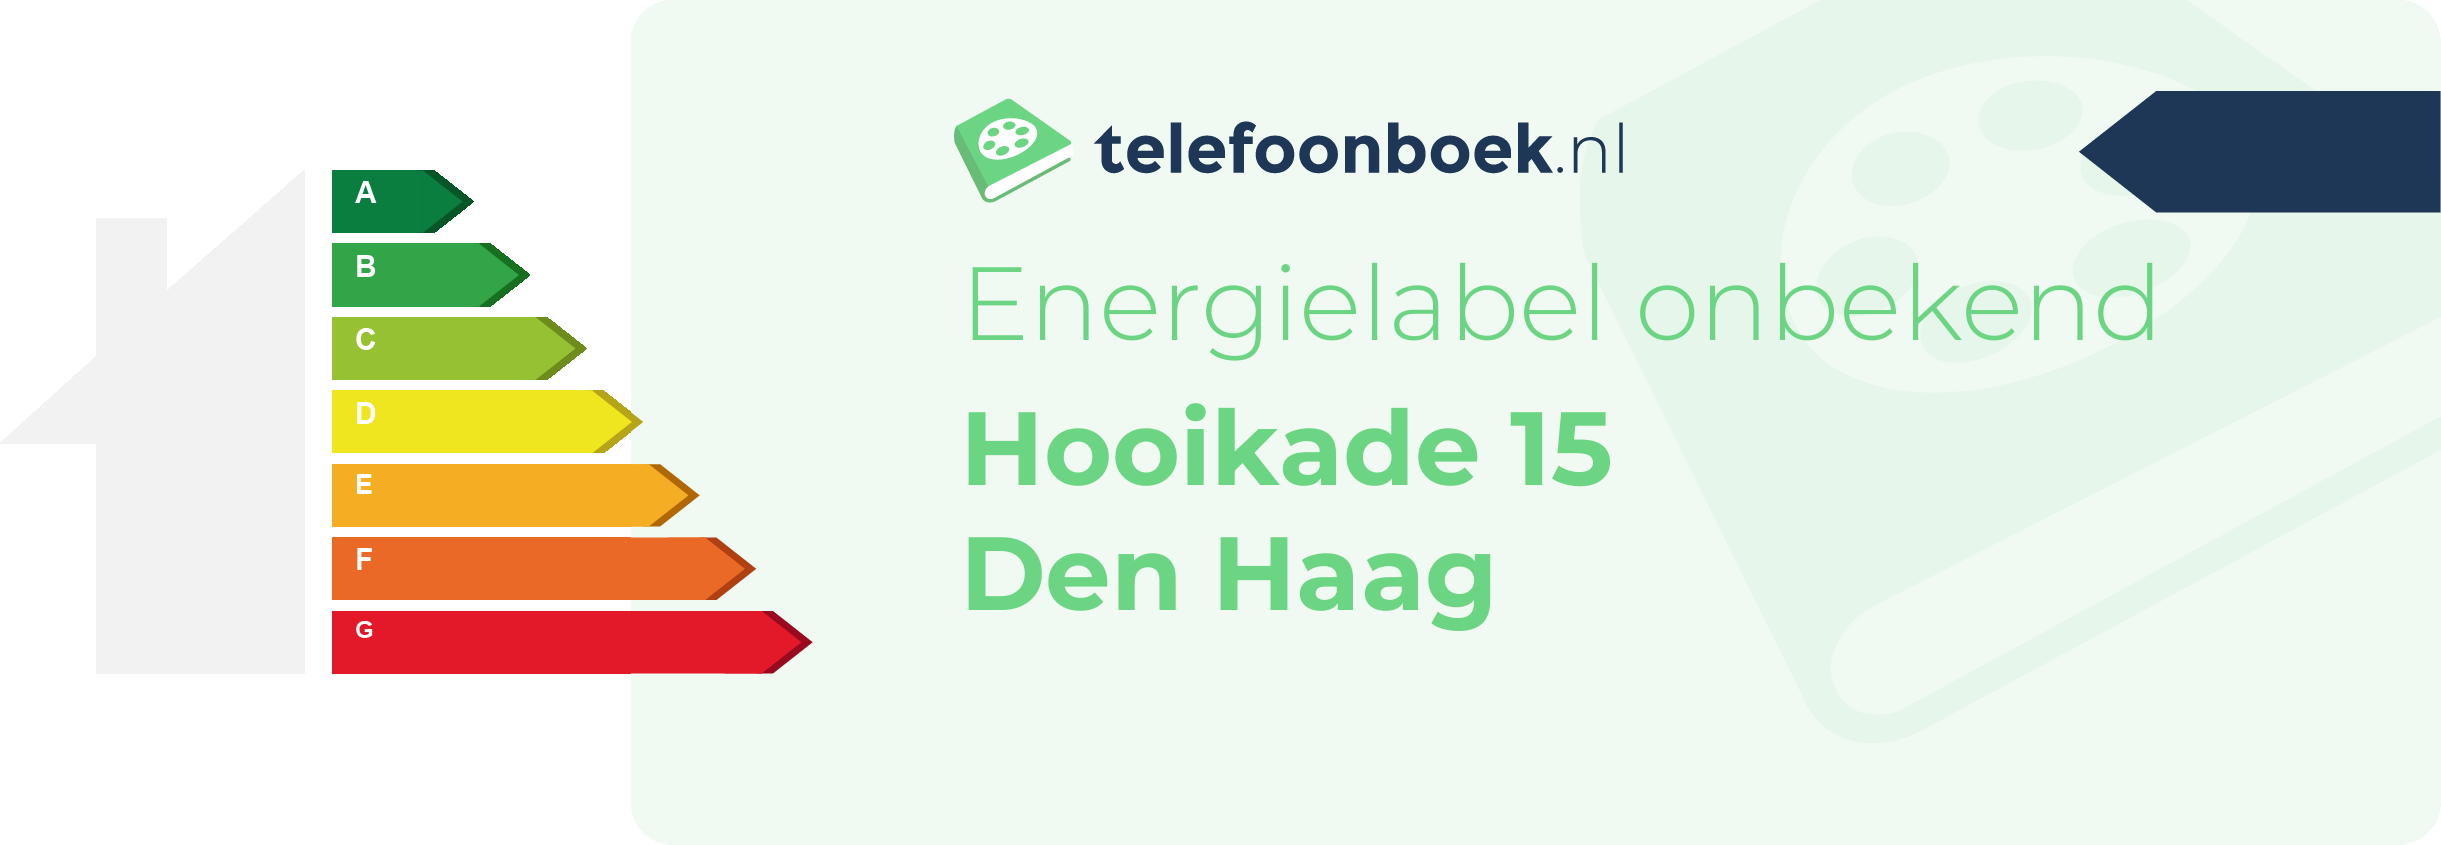 Energielabel Hooikade 15 Den Haag